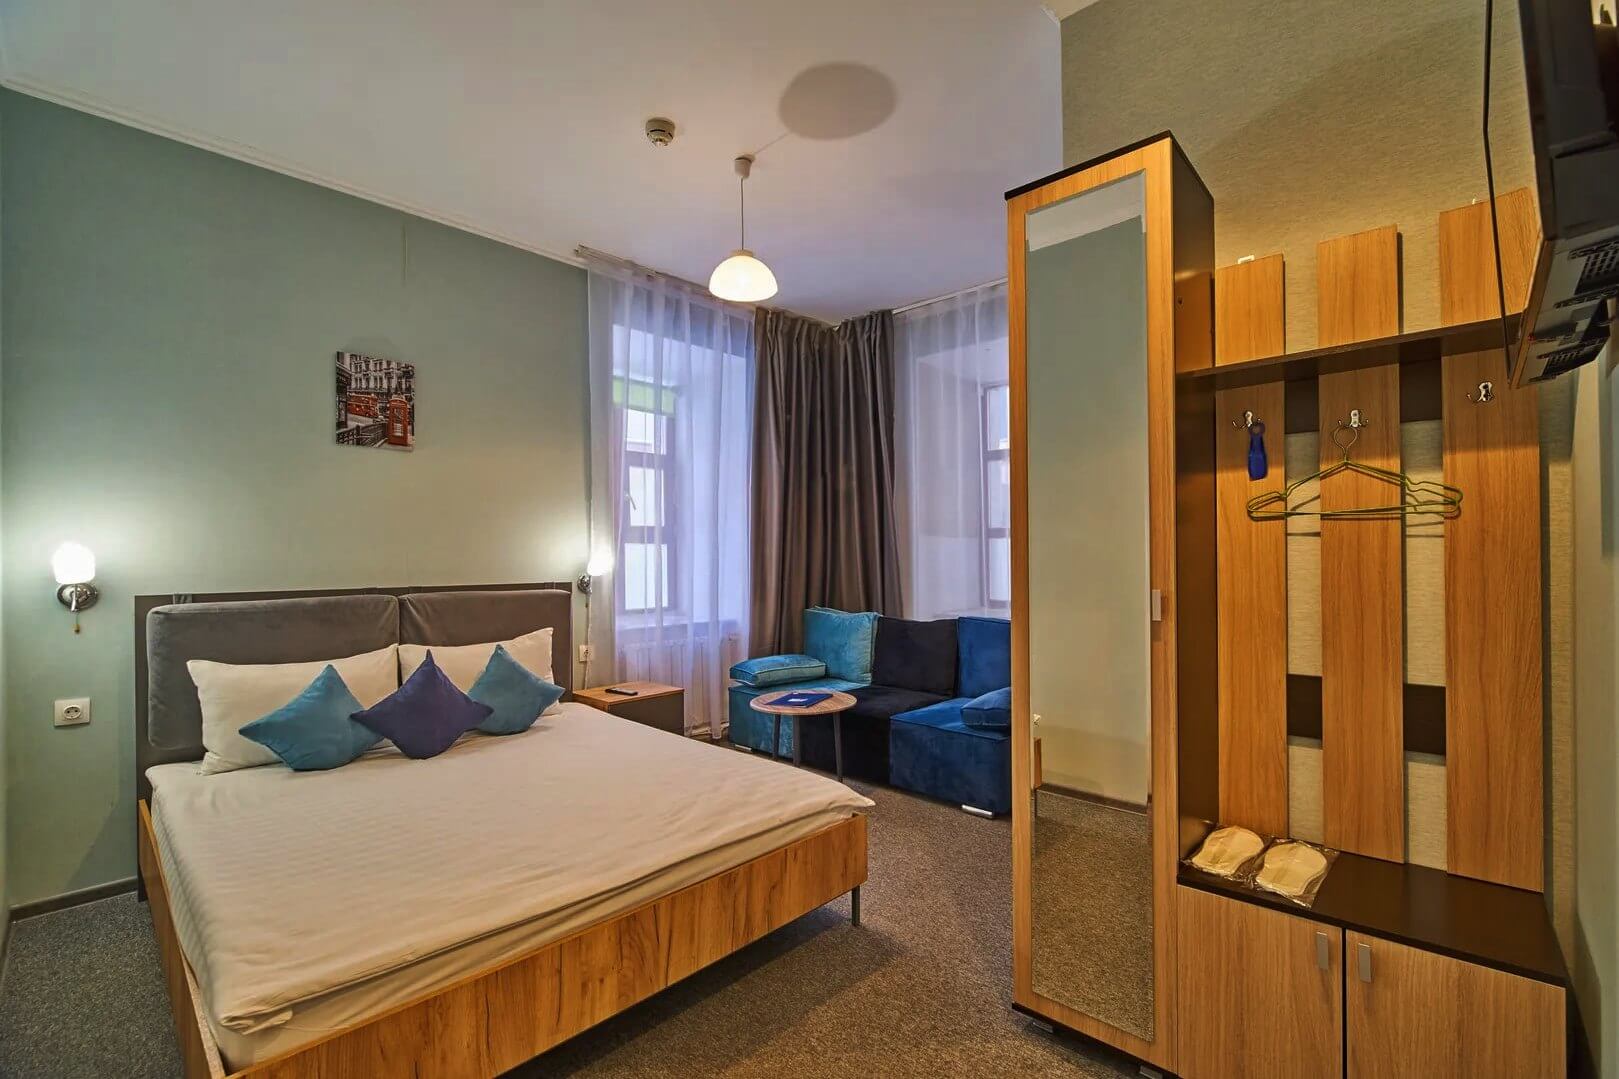 В комнате три отдельных зоны: спальня с кроватью, зона прихожей со шкафом и зеркалом, у окна - диван с кофейным столиком.